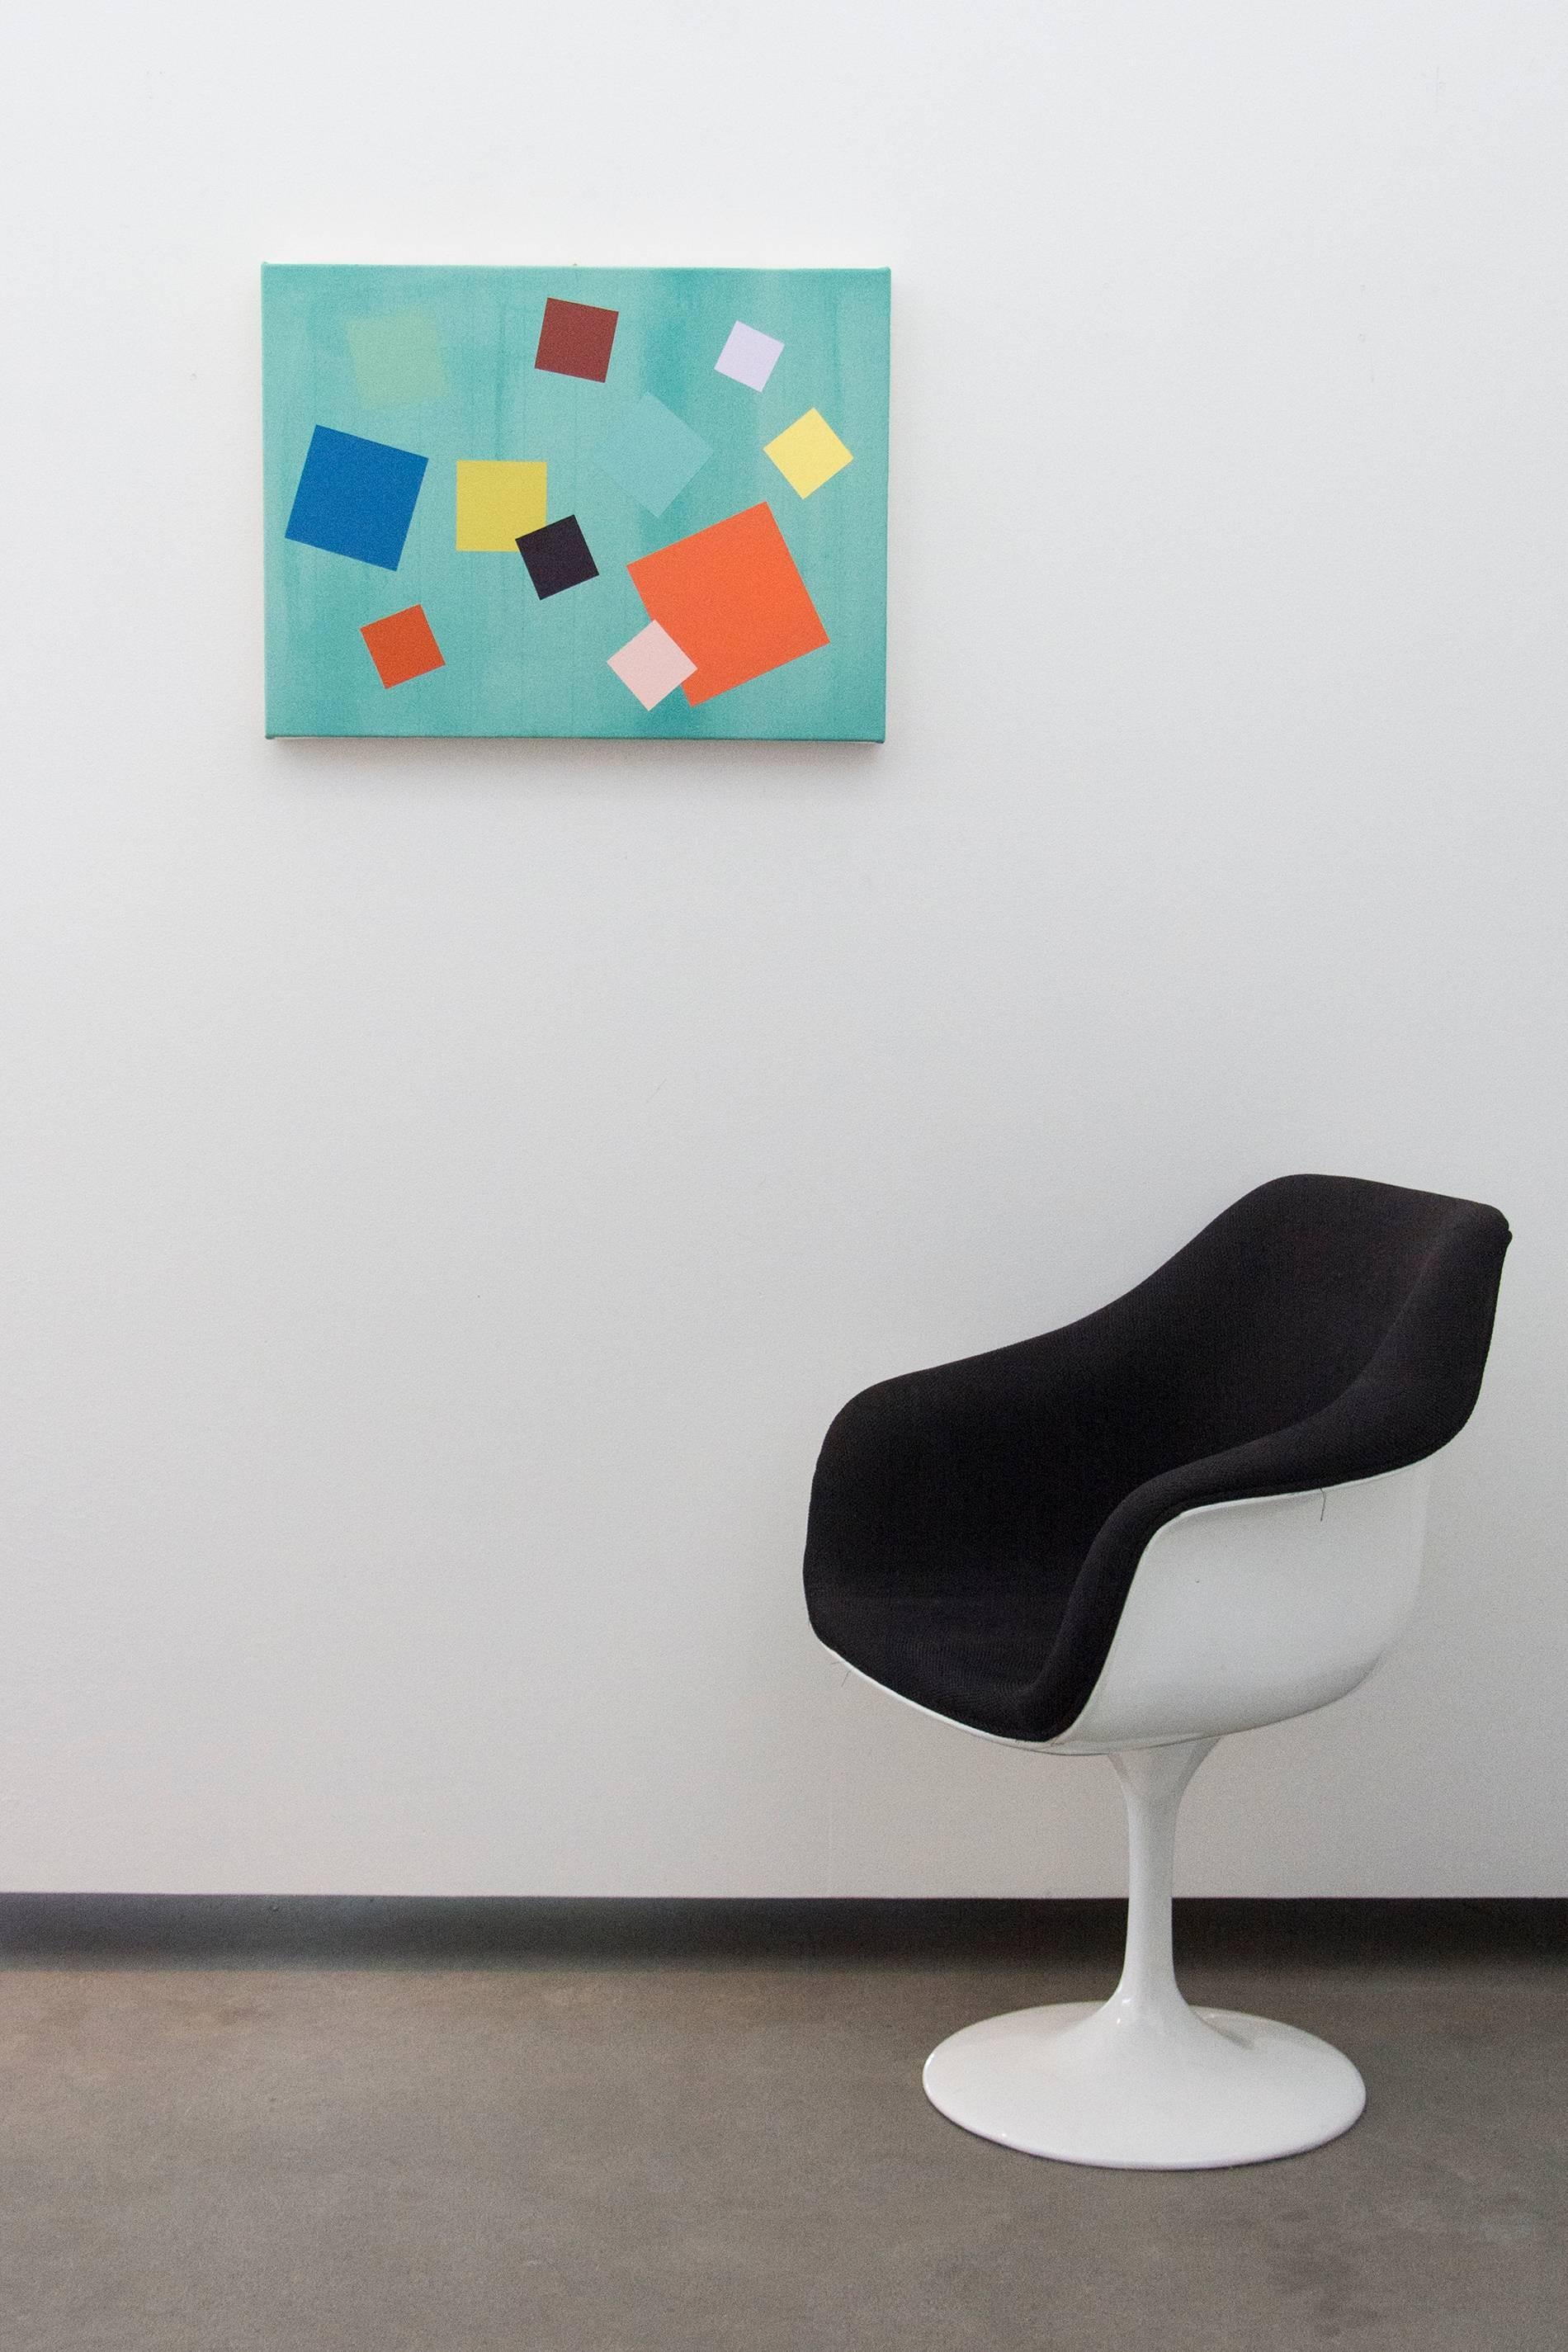 Joue sur grille verte - abstrait géométrique brillant, coloré, acrylique sur toile - Painting de Milly Ristvedt